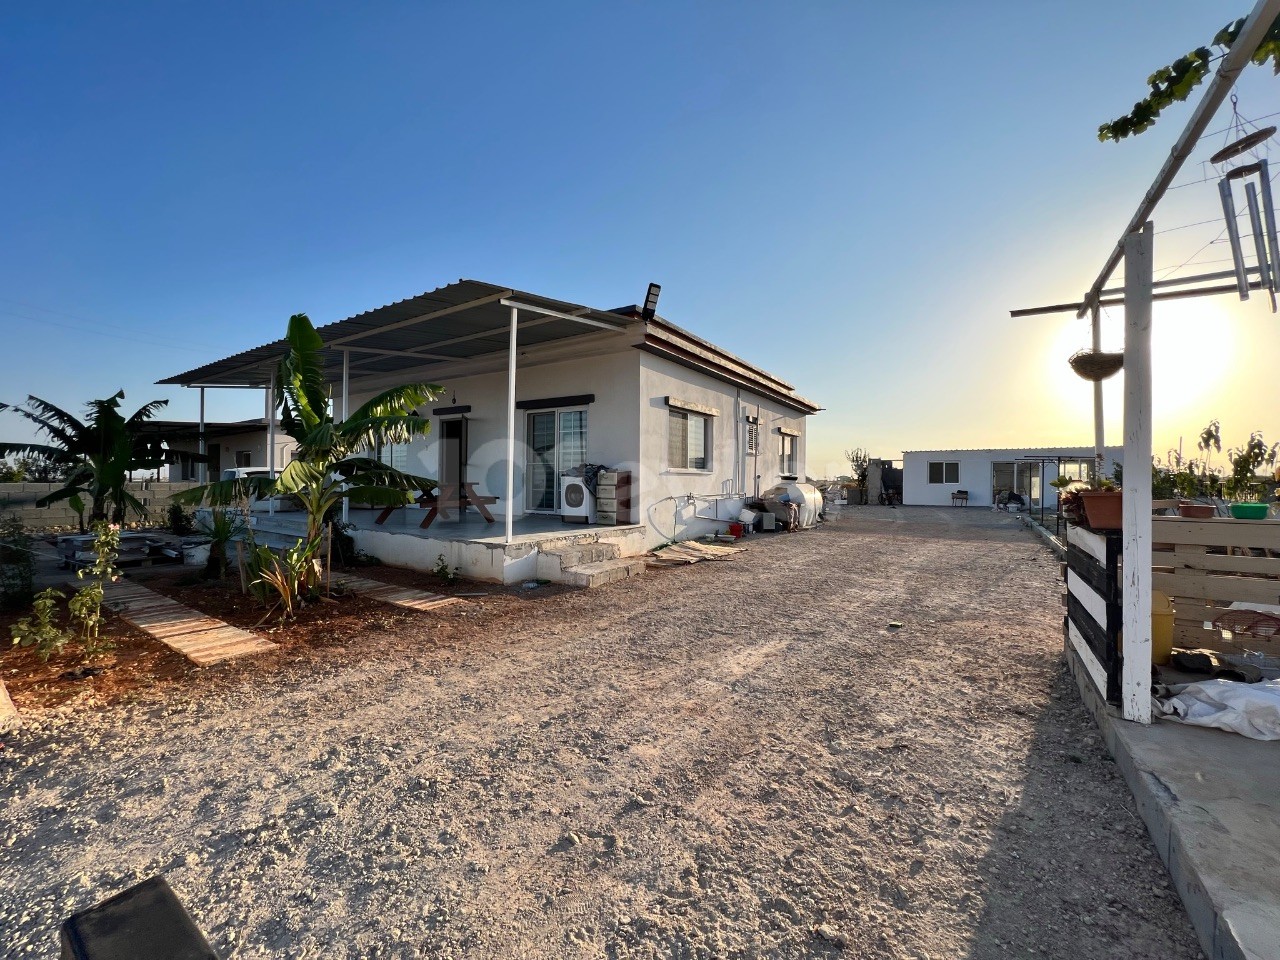 Iskele Sınırüstünde kiralık yeni bina müstakil ev